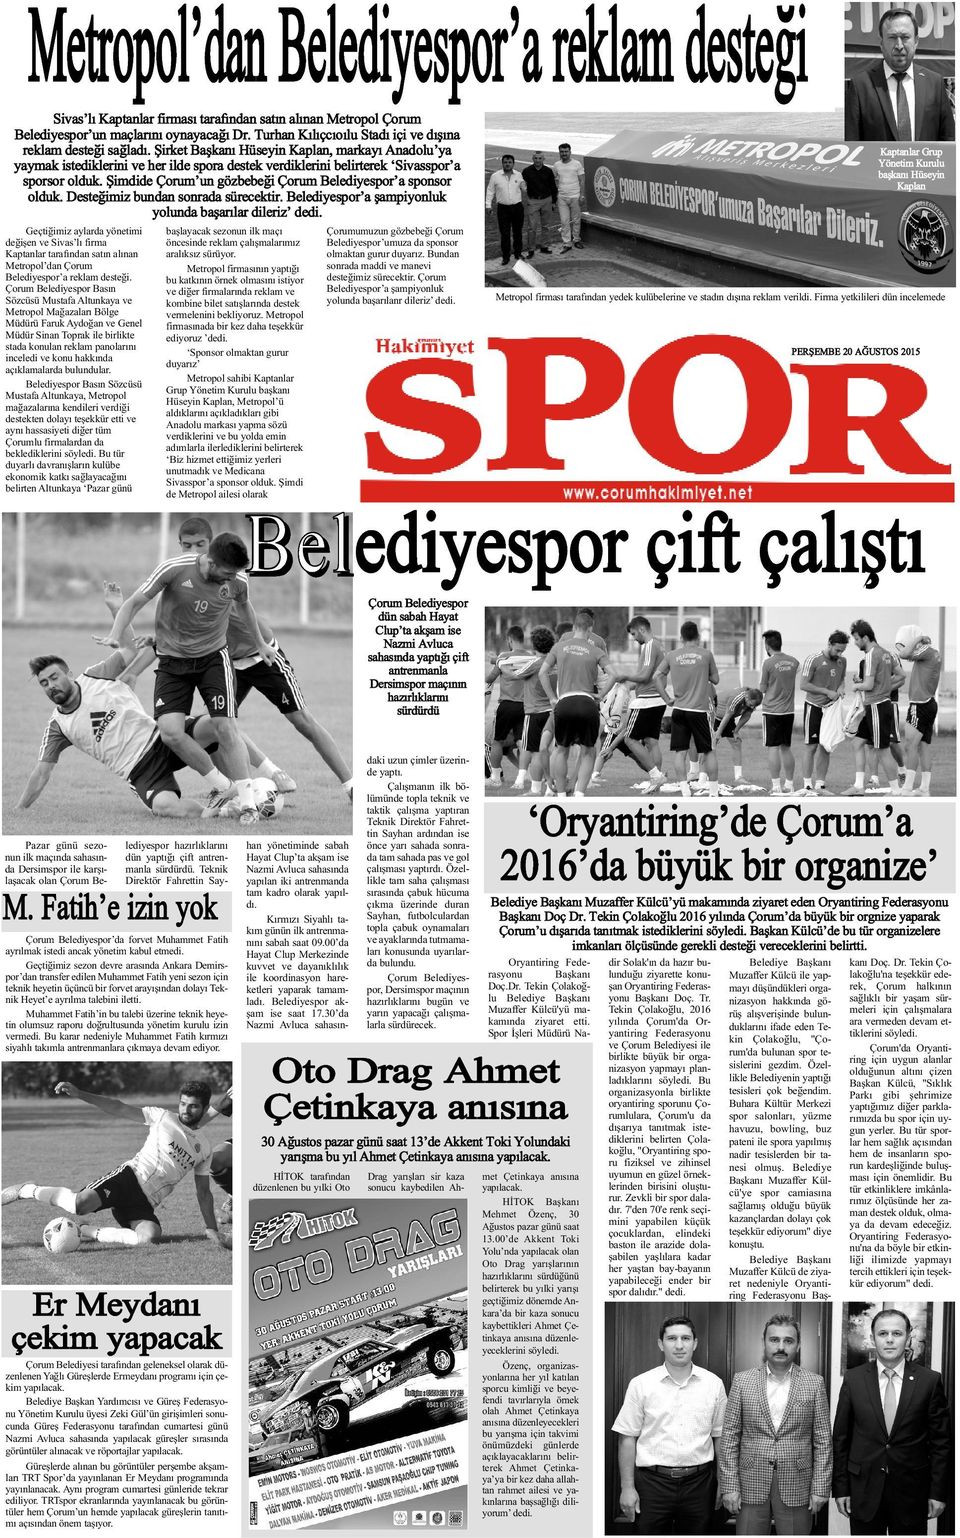 Þirket Baþkaný Hüseyin Kaplan, markayý Anadolu ya yaymak istediklerini ve her ilde spora destek verdiklerini belirterek Sivasspor a sporsor olduk.